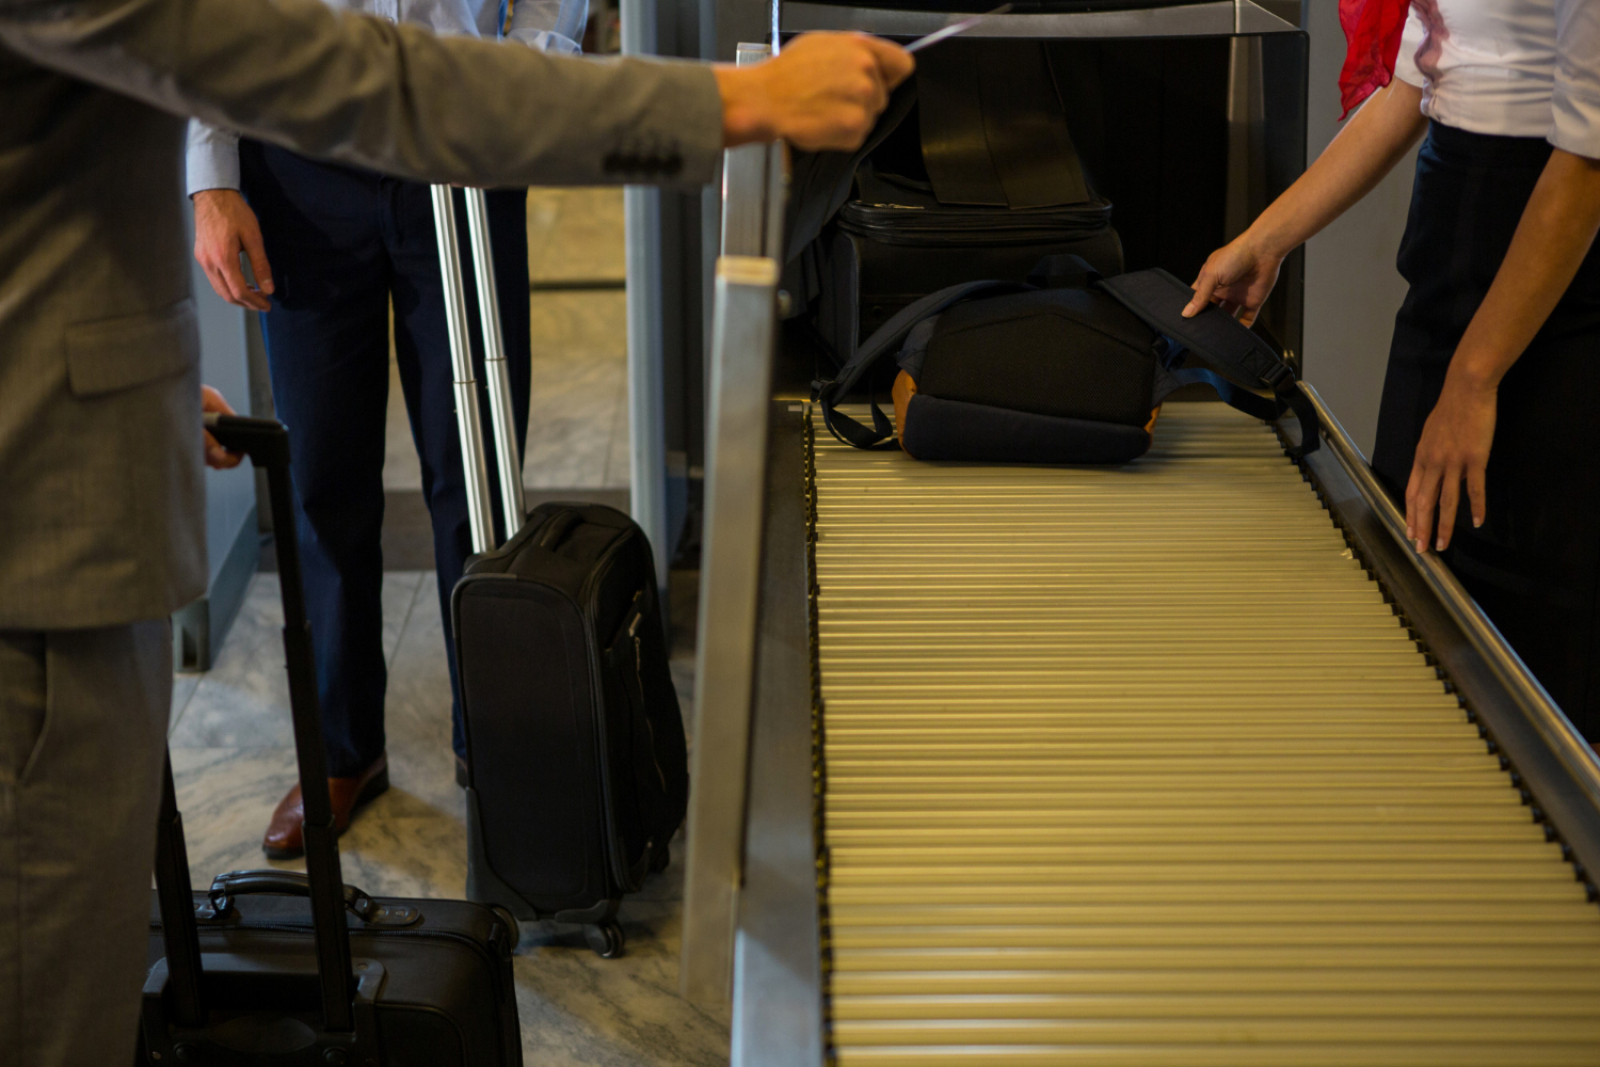 Liquidi e computer ammessi nel bagaglio a mano in alcuni aeroporti italiani.  Ovidiu Burdușa: “Puoi passare con acqua e vino… e con quello che vuoi…”